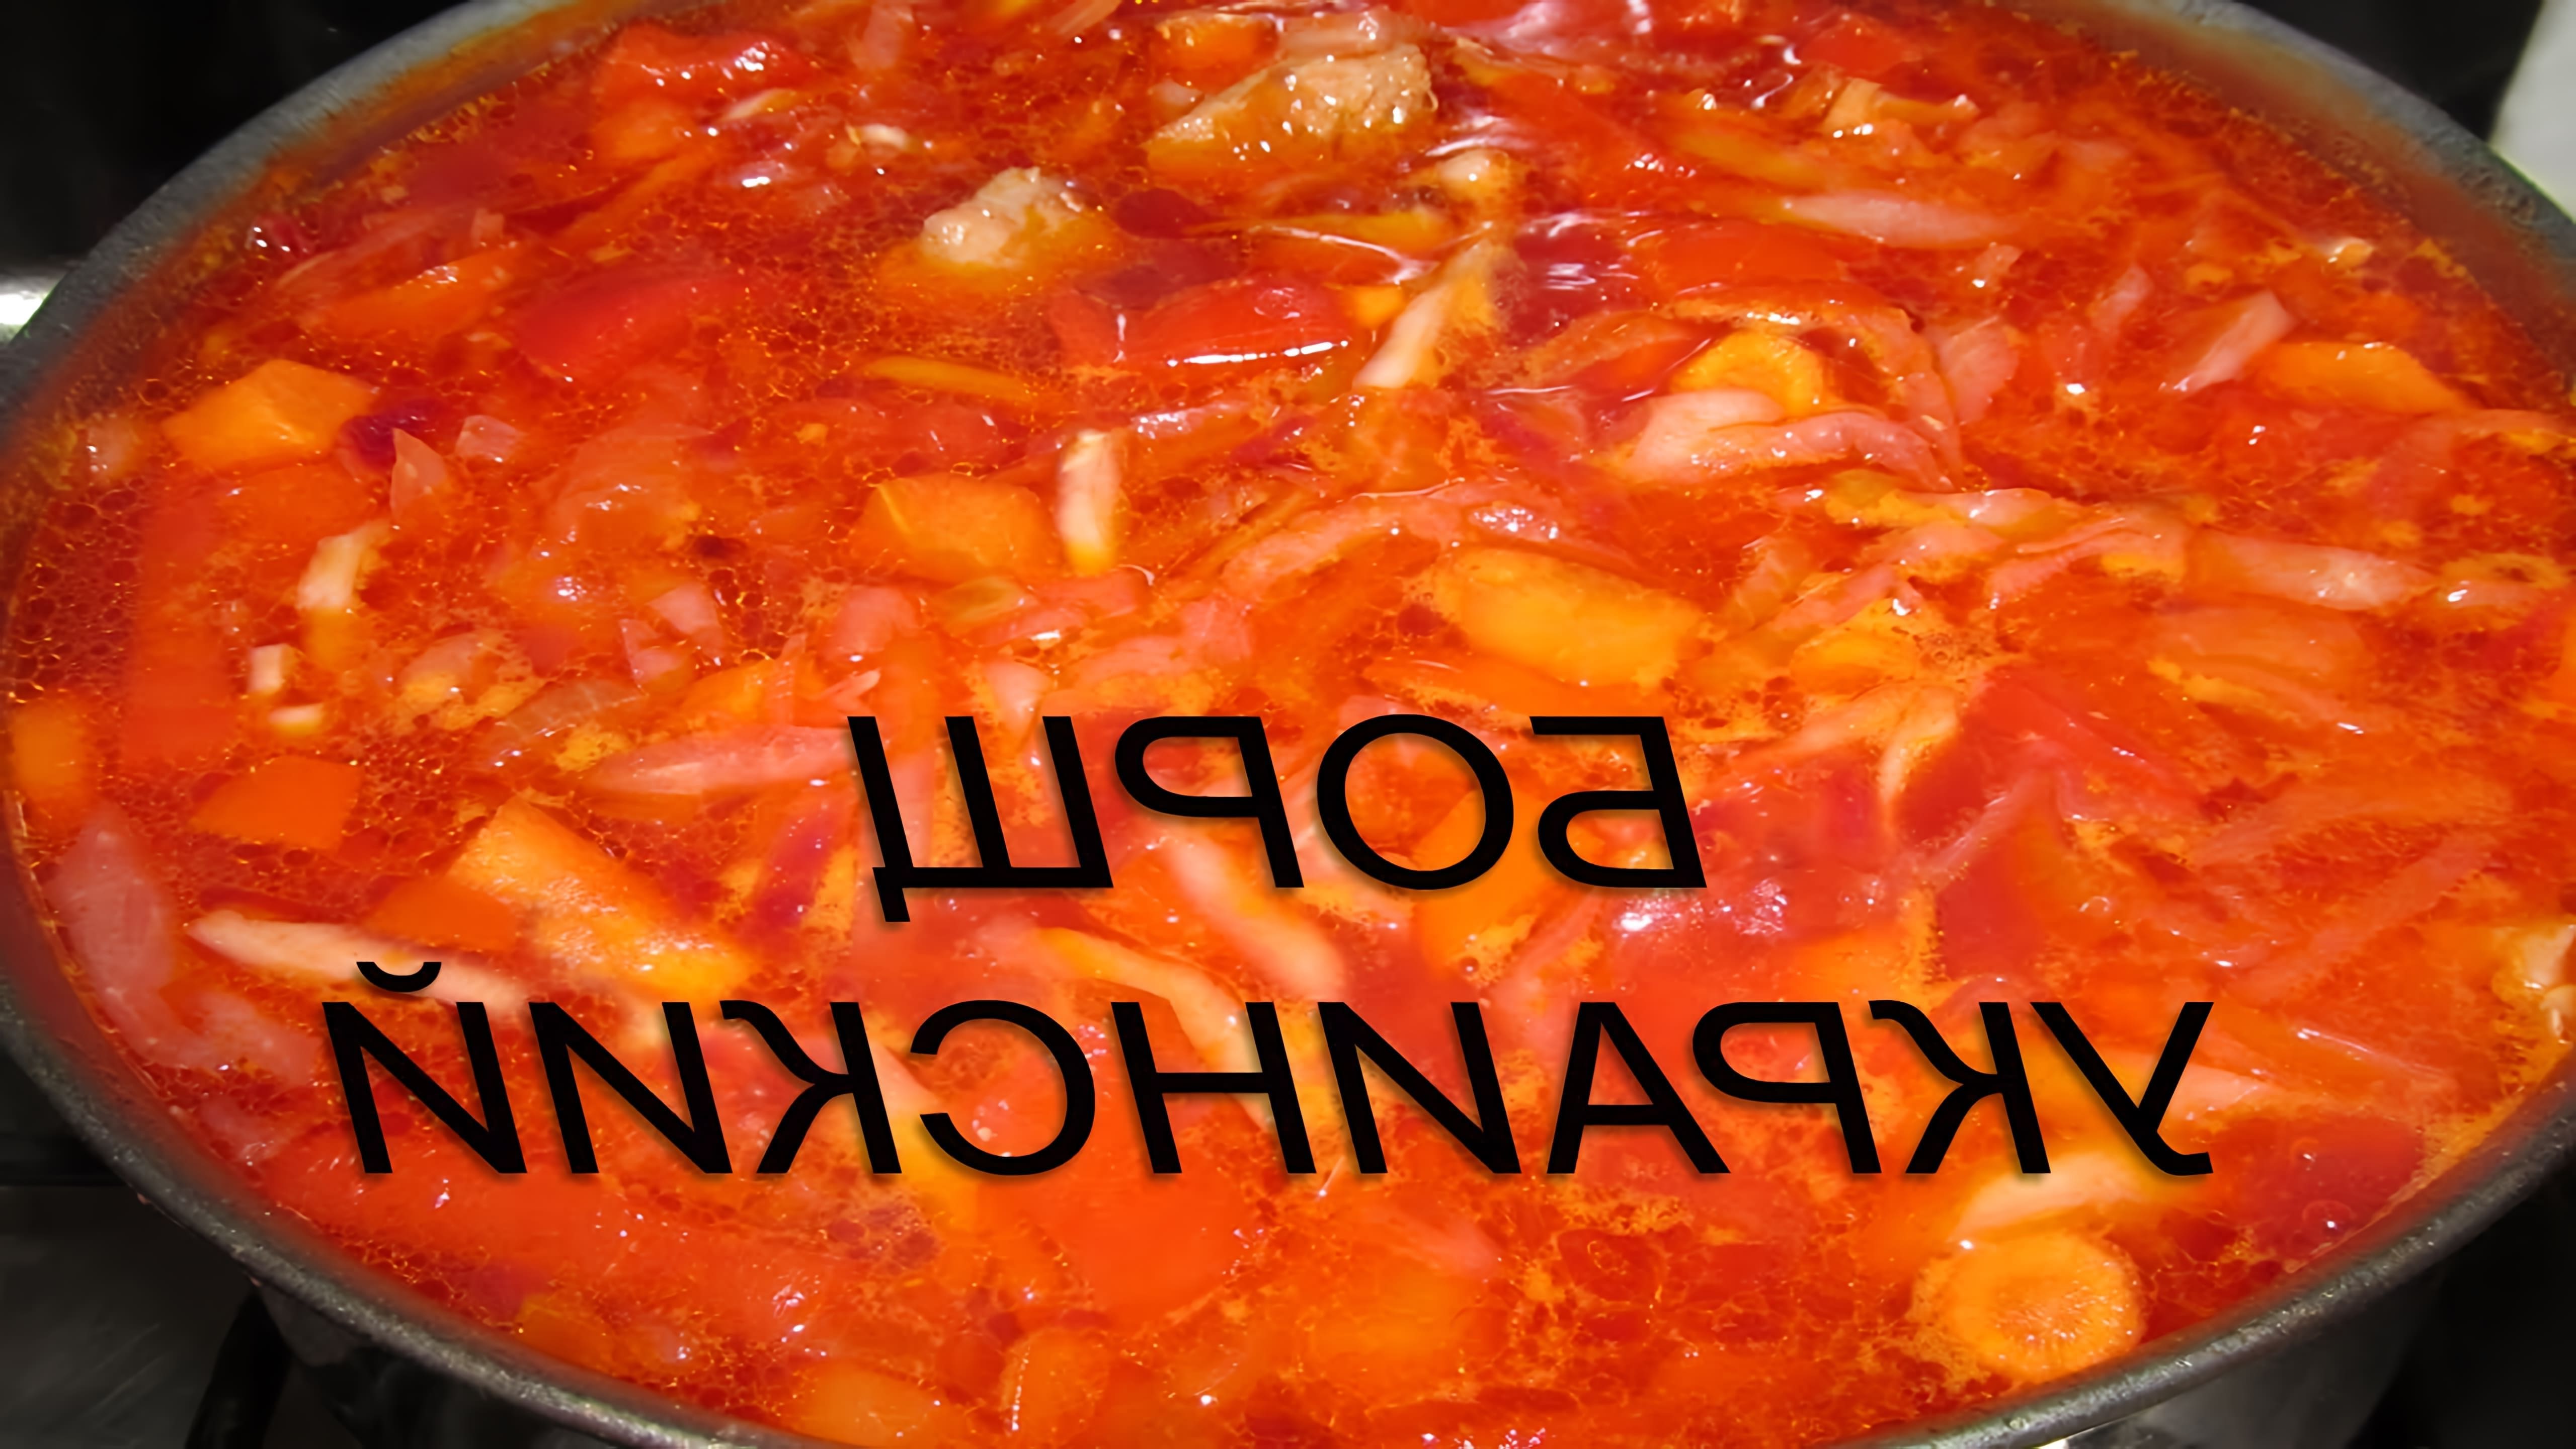 Борщ - это традиционное блюдо украинской кухни, которое готовится из свеклы, капусты, картофеля, моркови, лука, томатов и специй